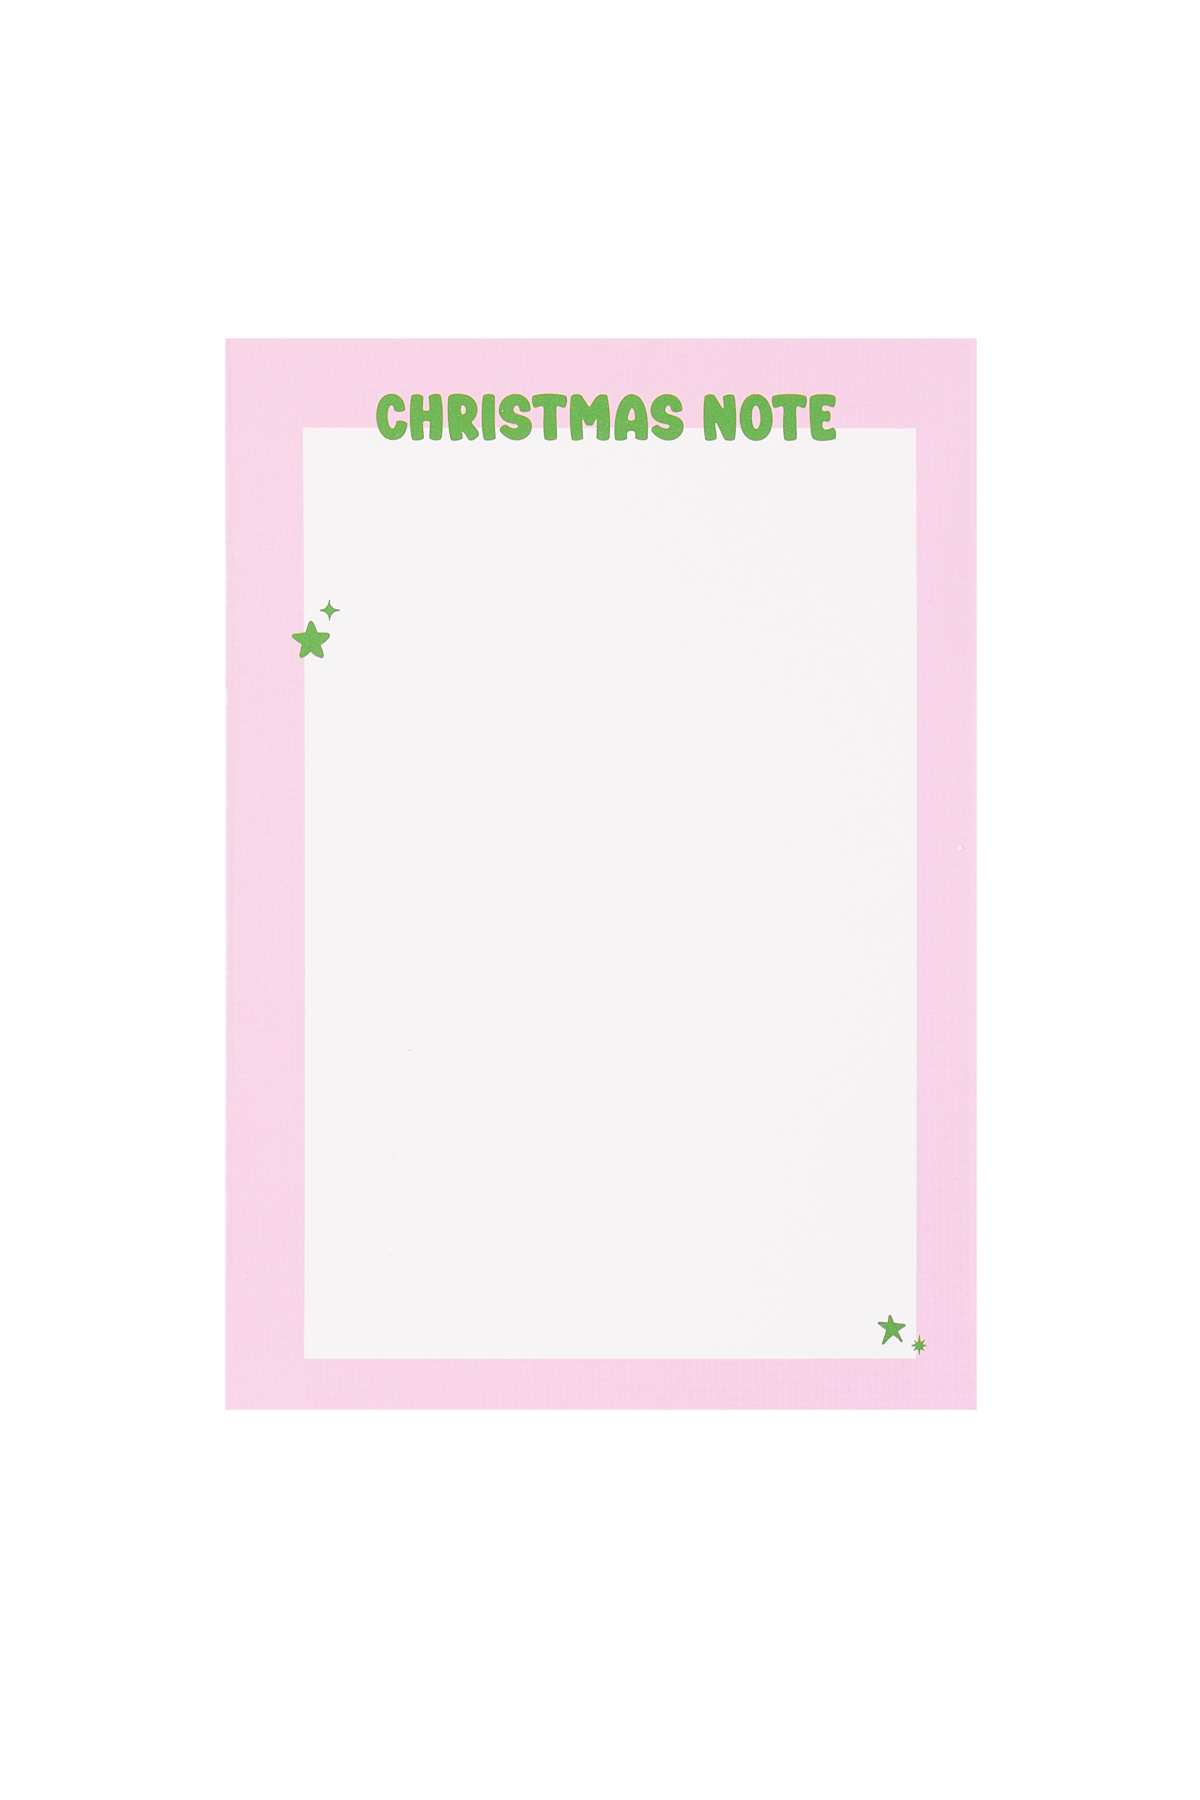 Carte de vœux de Noël qui ressemble un peu à Noël - rose h5 Image2